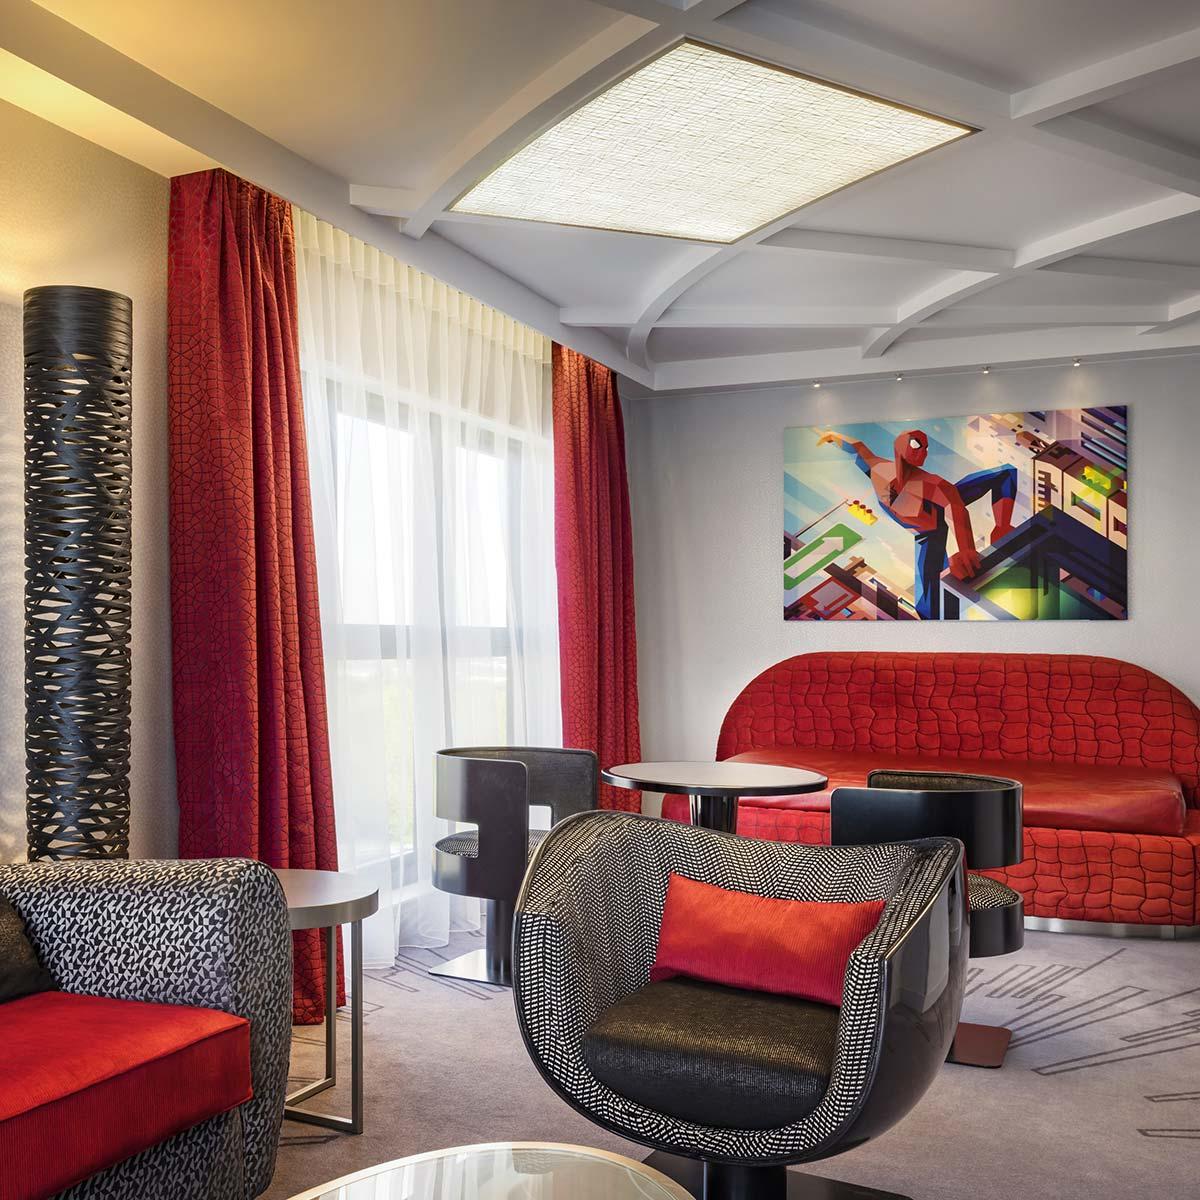 Club kamers en suites en een club lounge in de stijl van Tony Stark